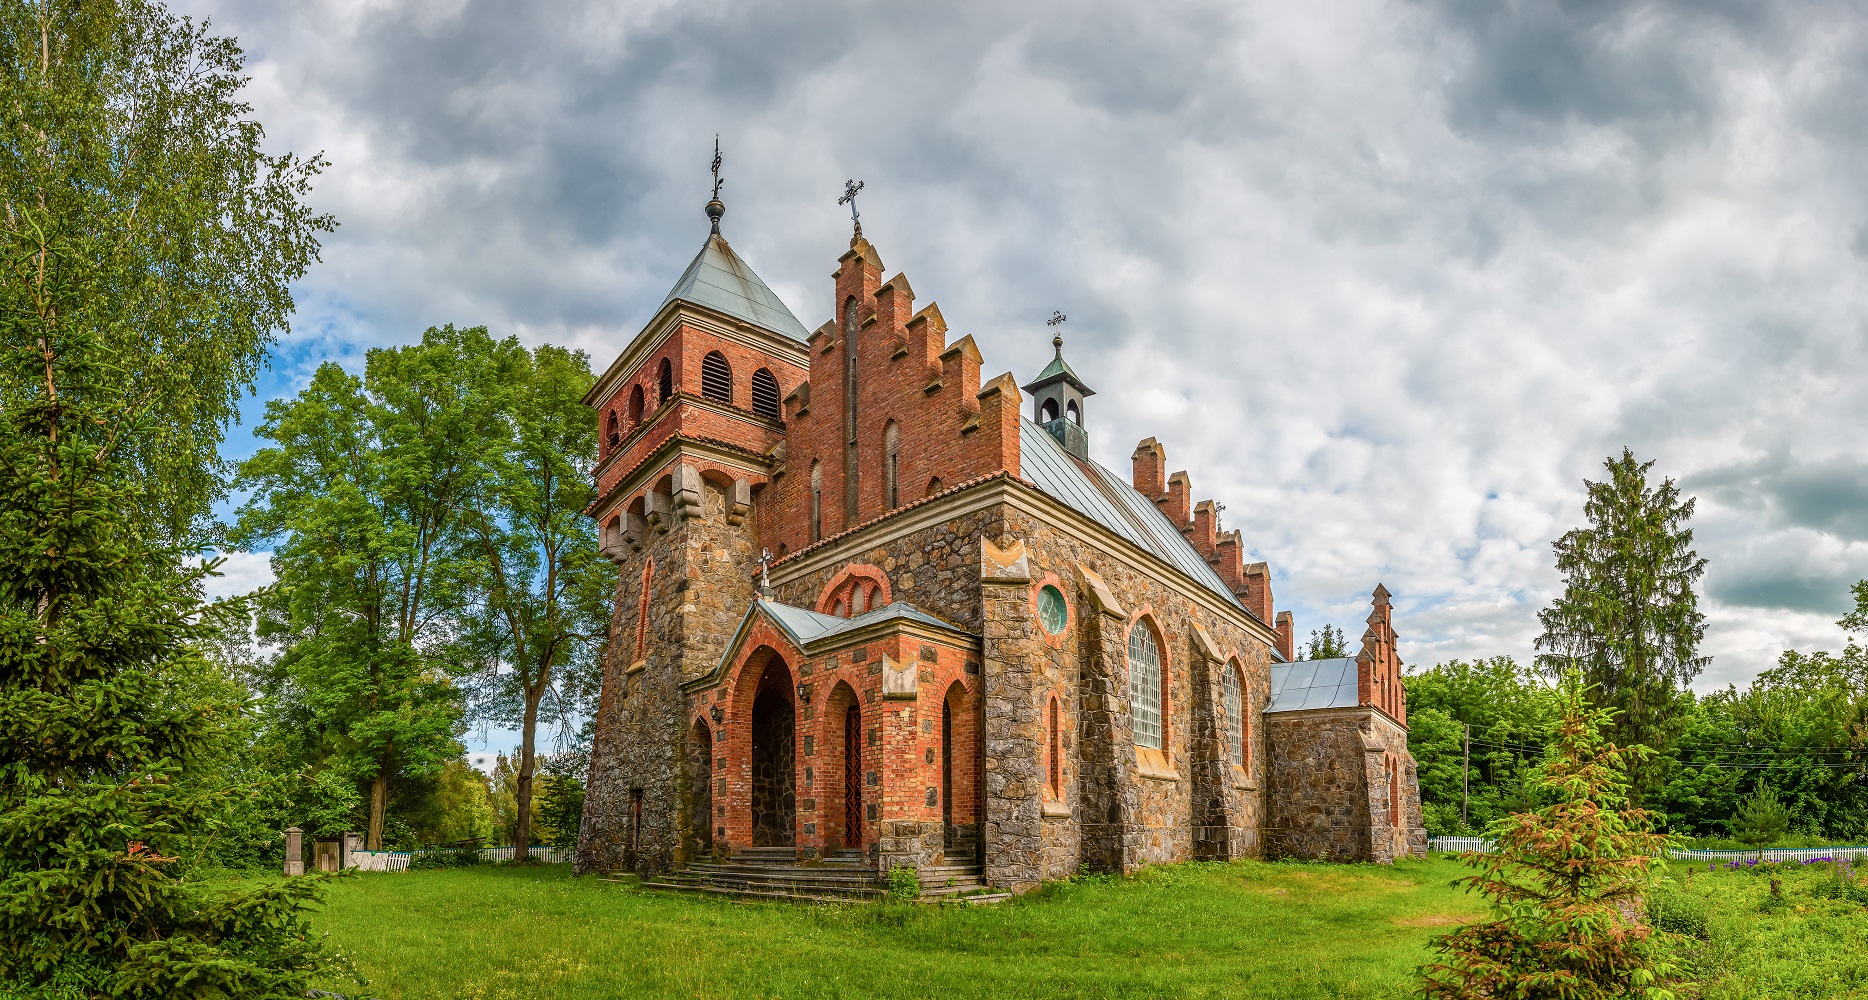 O estilo medieval e o uso de vitrais marcam a arquitetura eclética da Igreja de Santa Clara, na Ucrânia (Foto: Dmytro Balkhovitin)